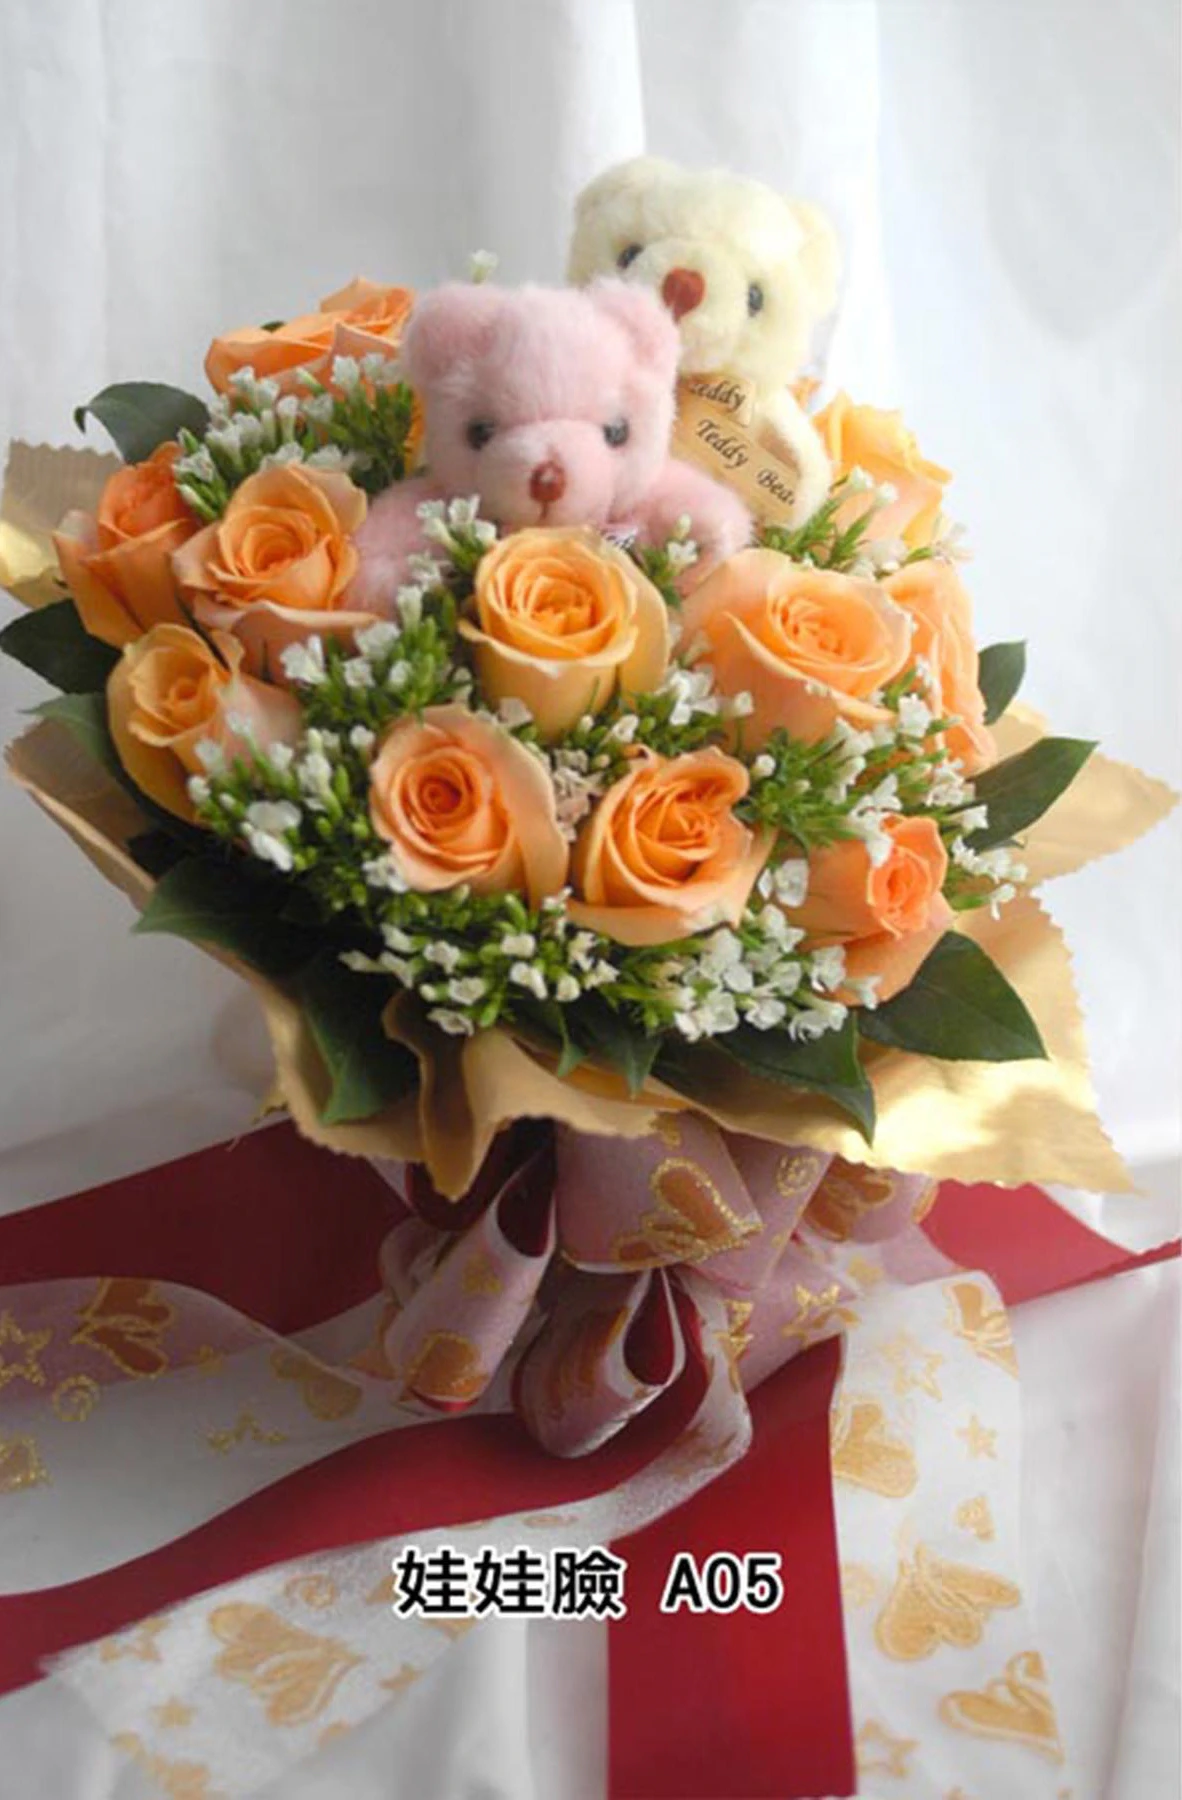 新娘捧花-花材有黃玫瑰花,滿天星,玩具熊2隻,花束型